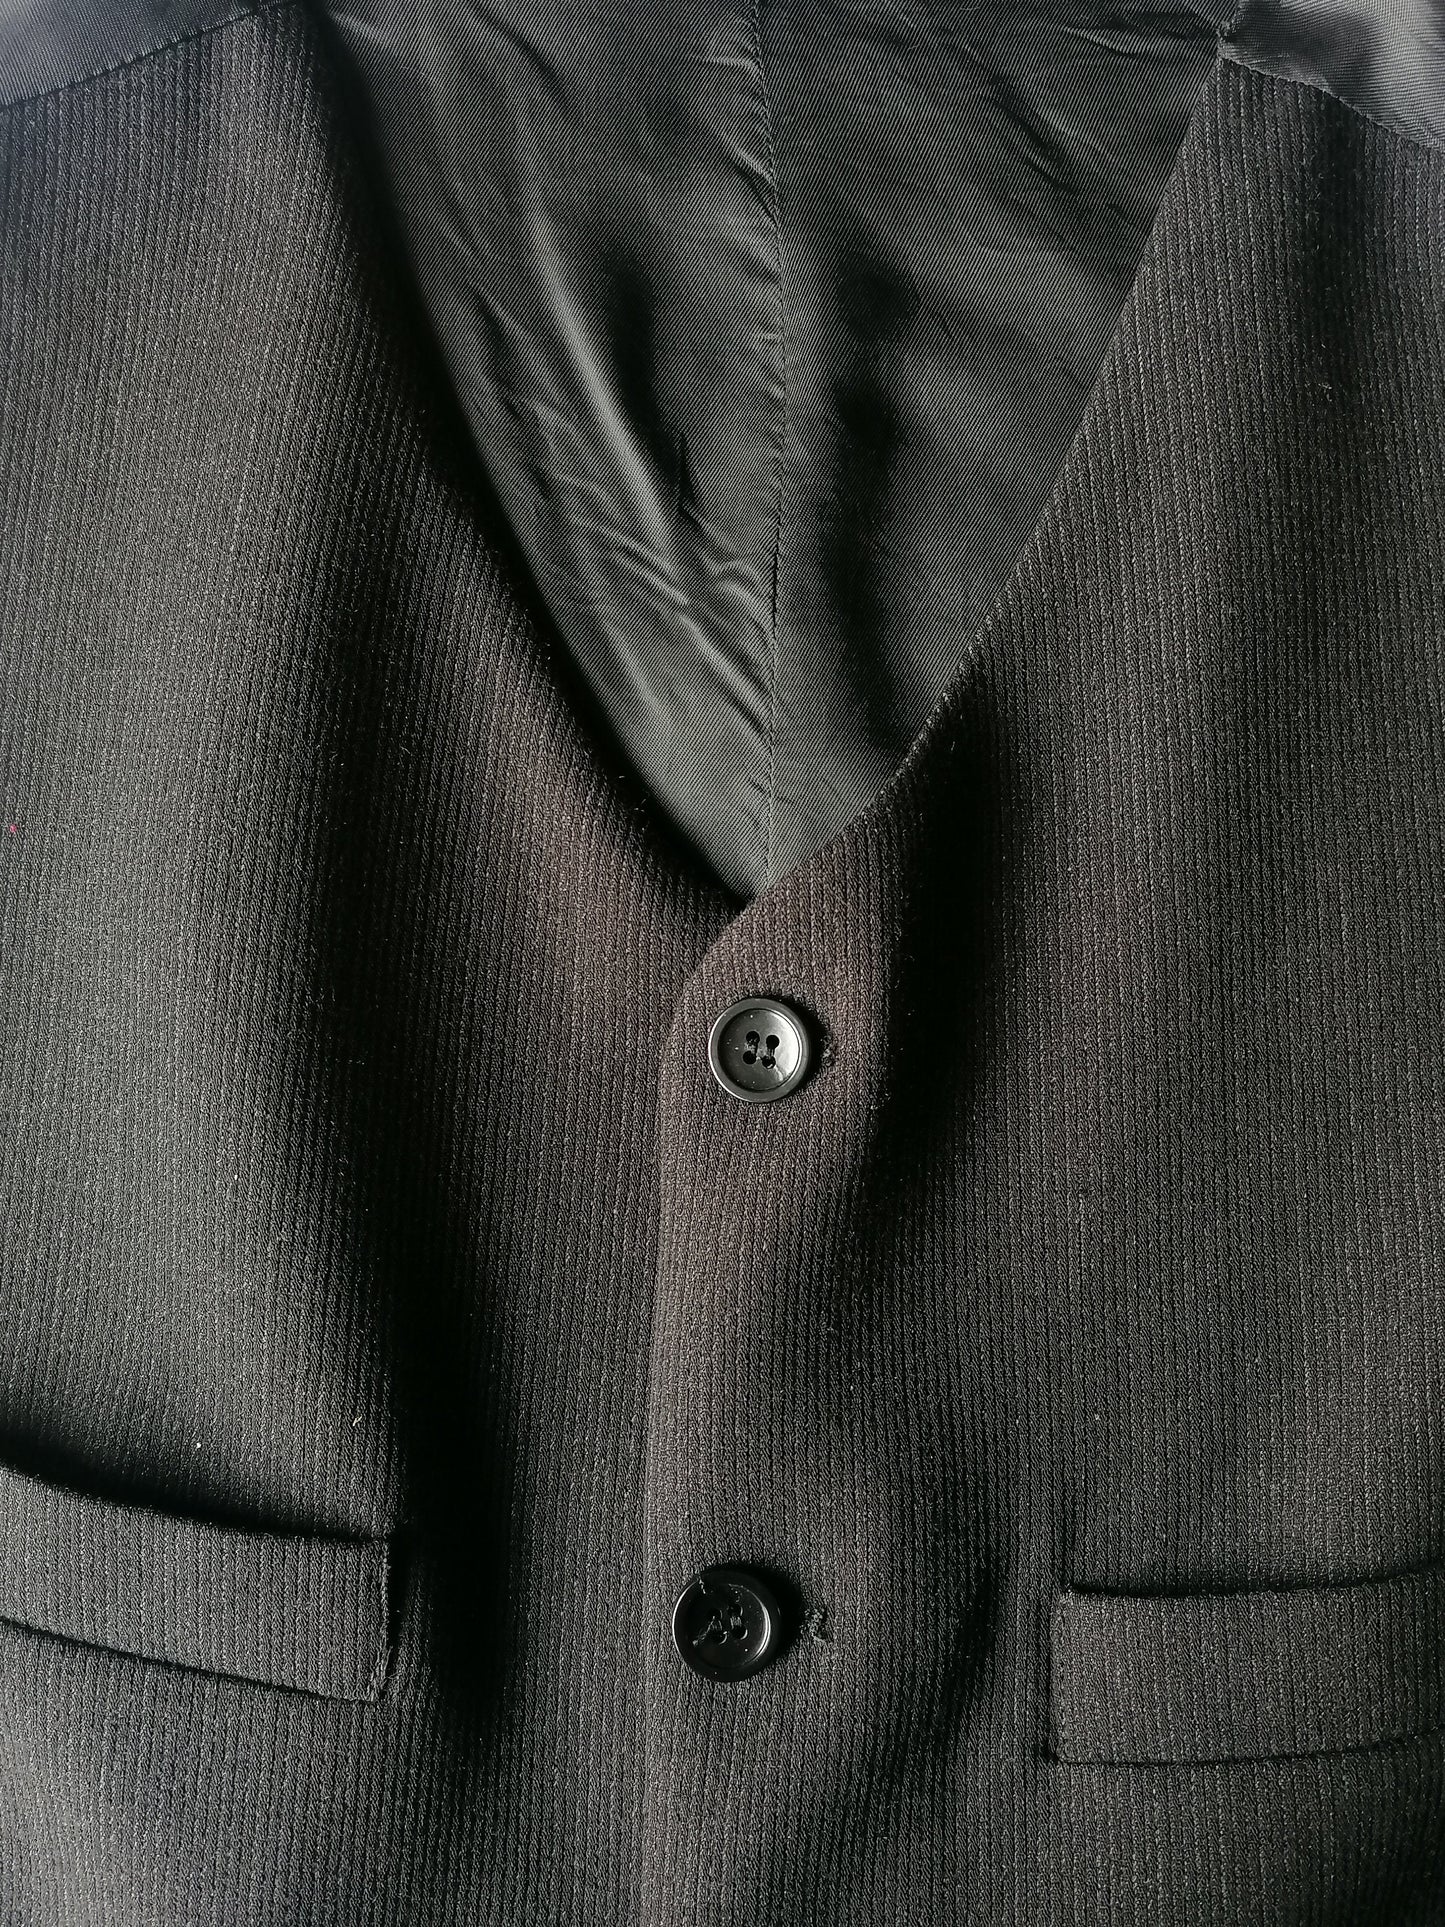 Woolen Wistcoat .. Black Striped. Tamaño 48 / S. #295